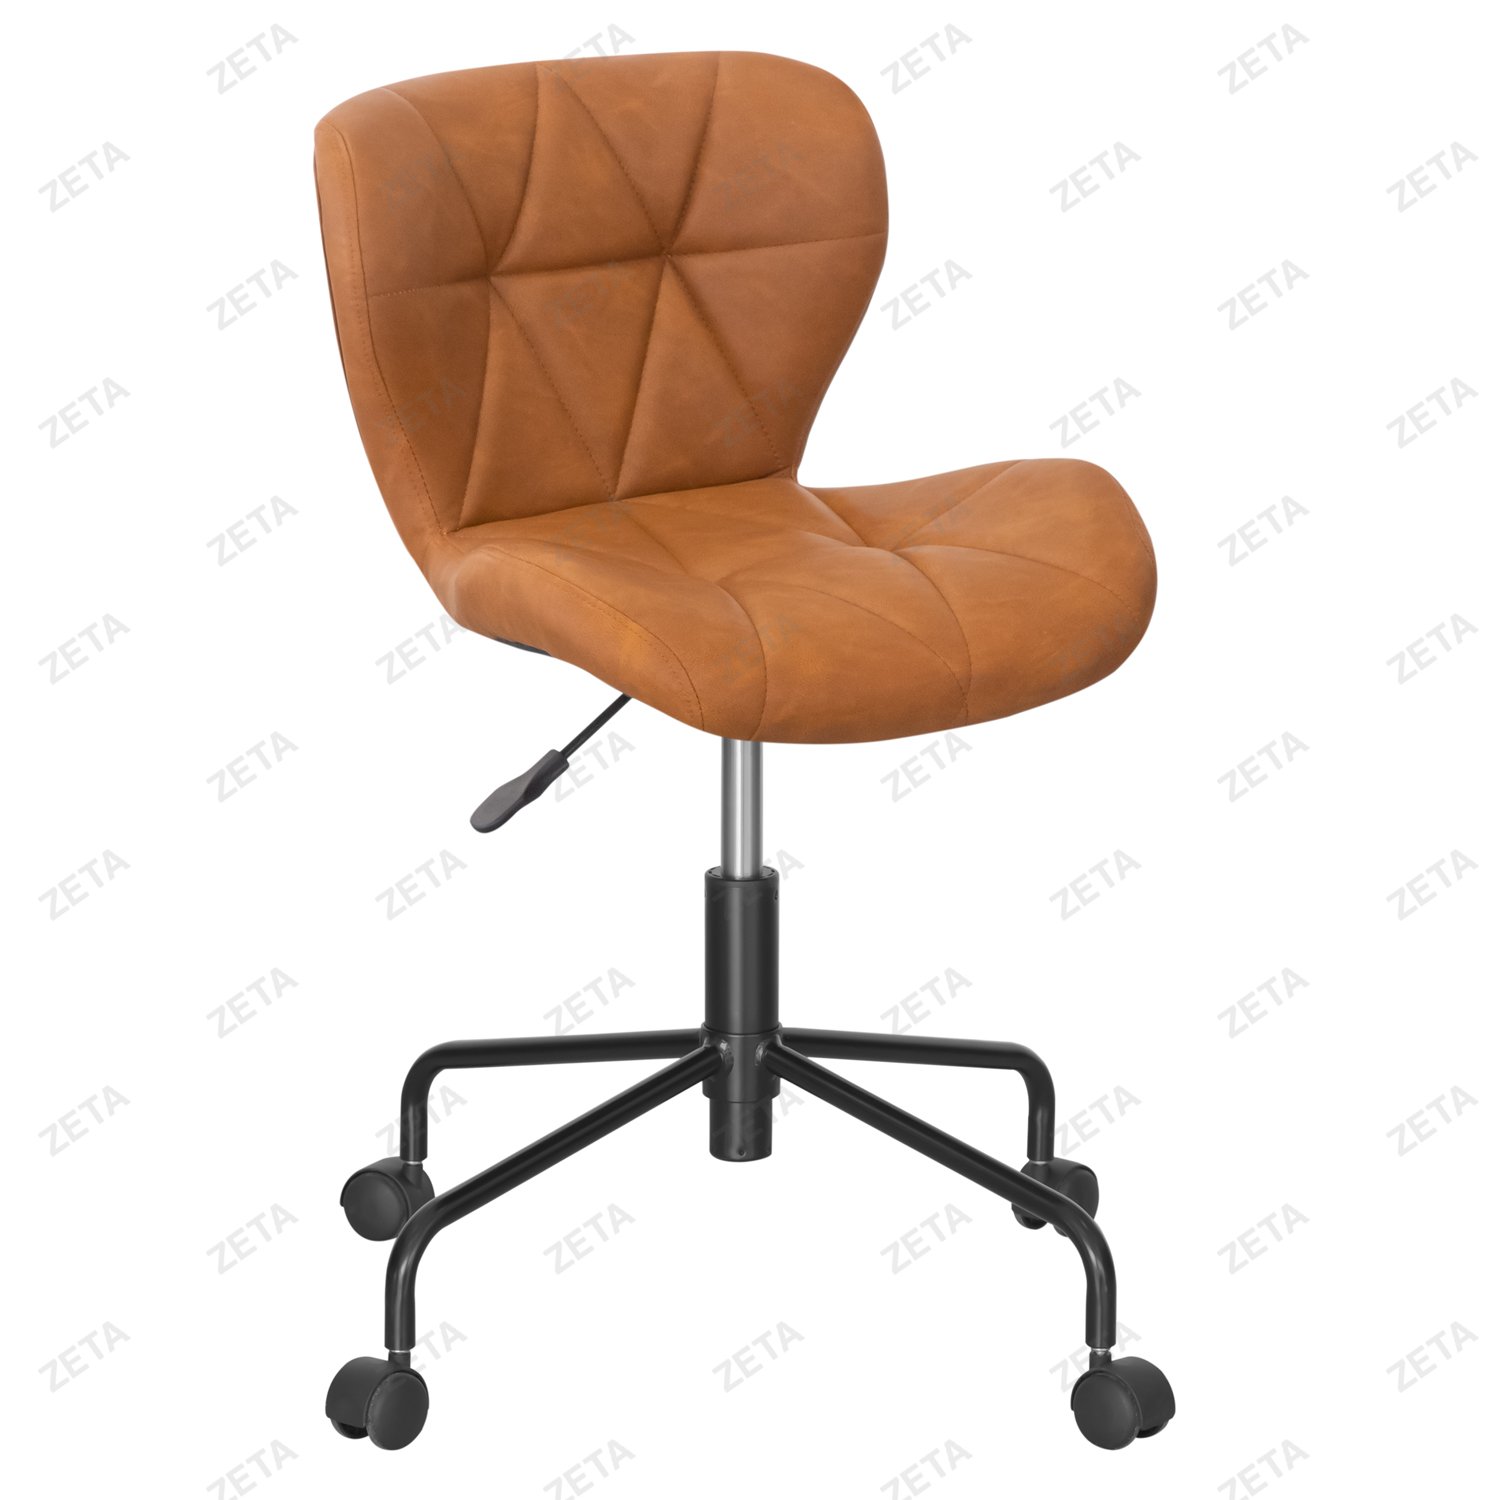 Кресло №4003-PU (коричневое) - изображение 1